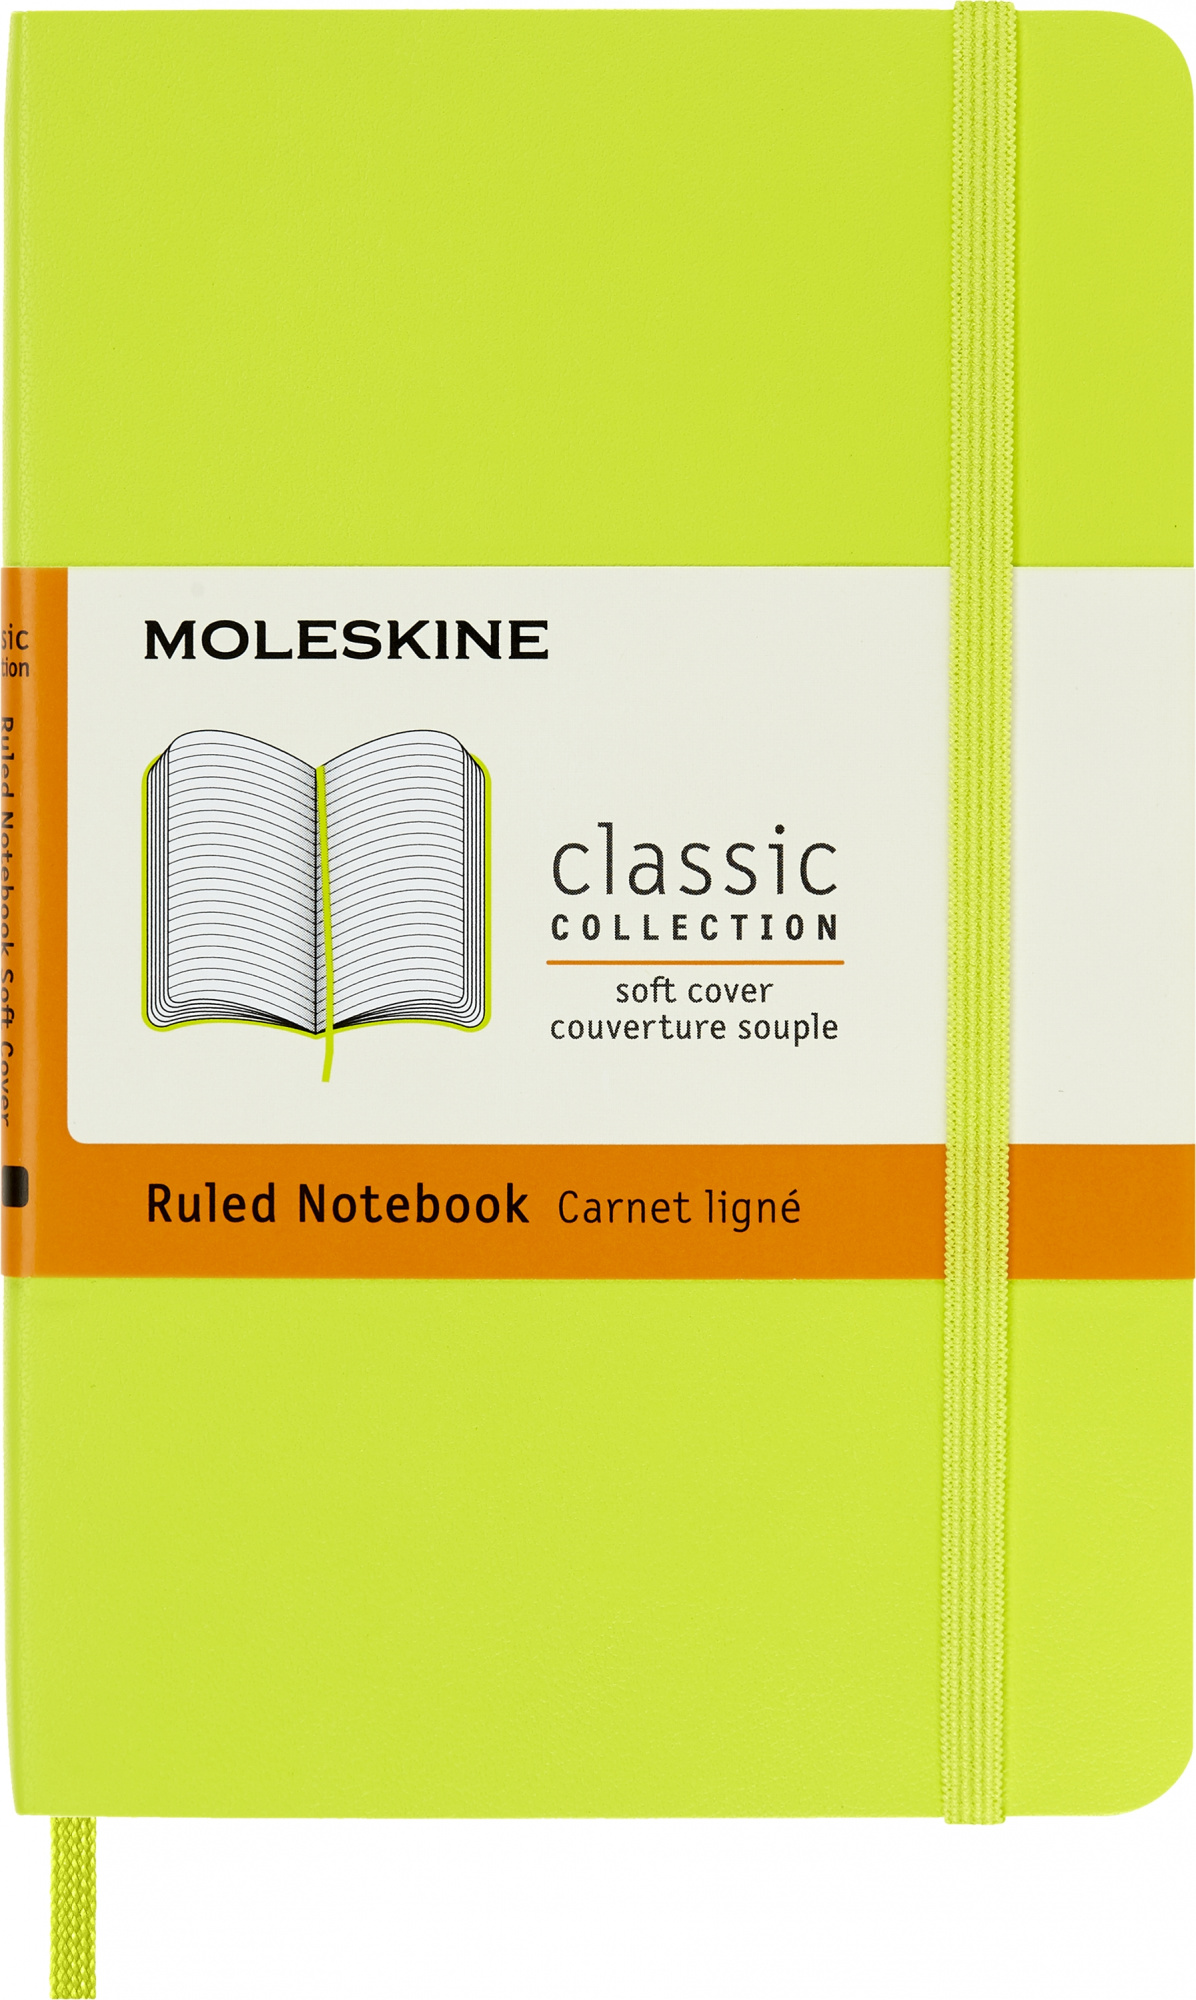 Блокнот Moleskine CLASSIC SOFT QP611C2 Pocket 90x140мм 192стр. линейка мягкая обложка лайм